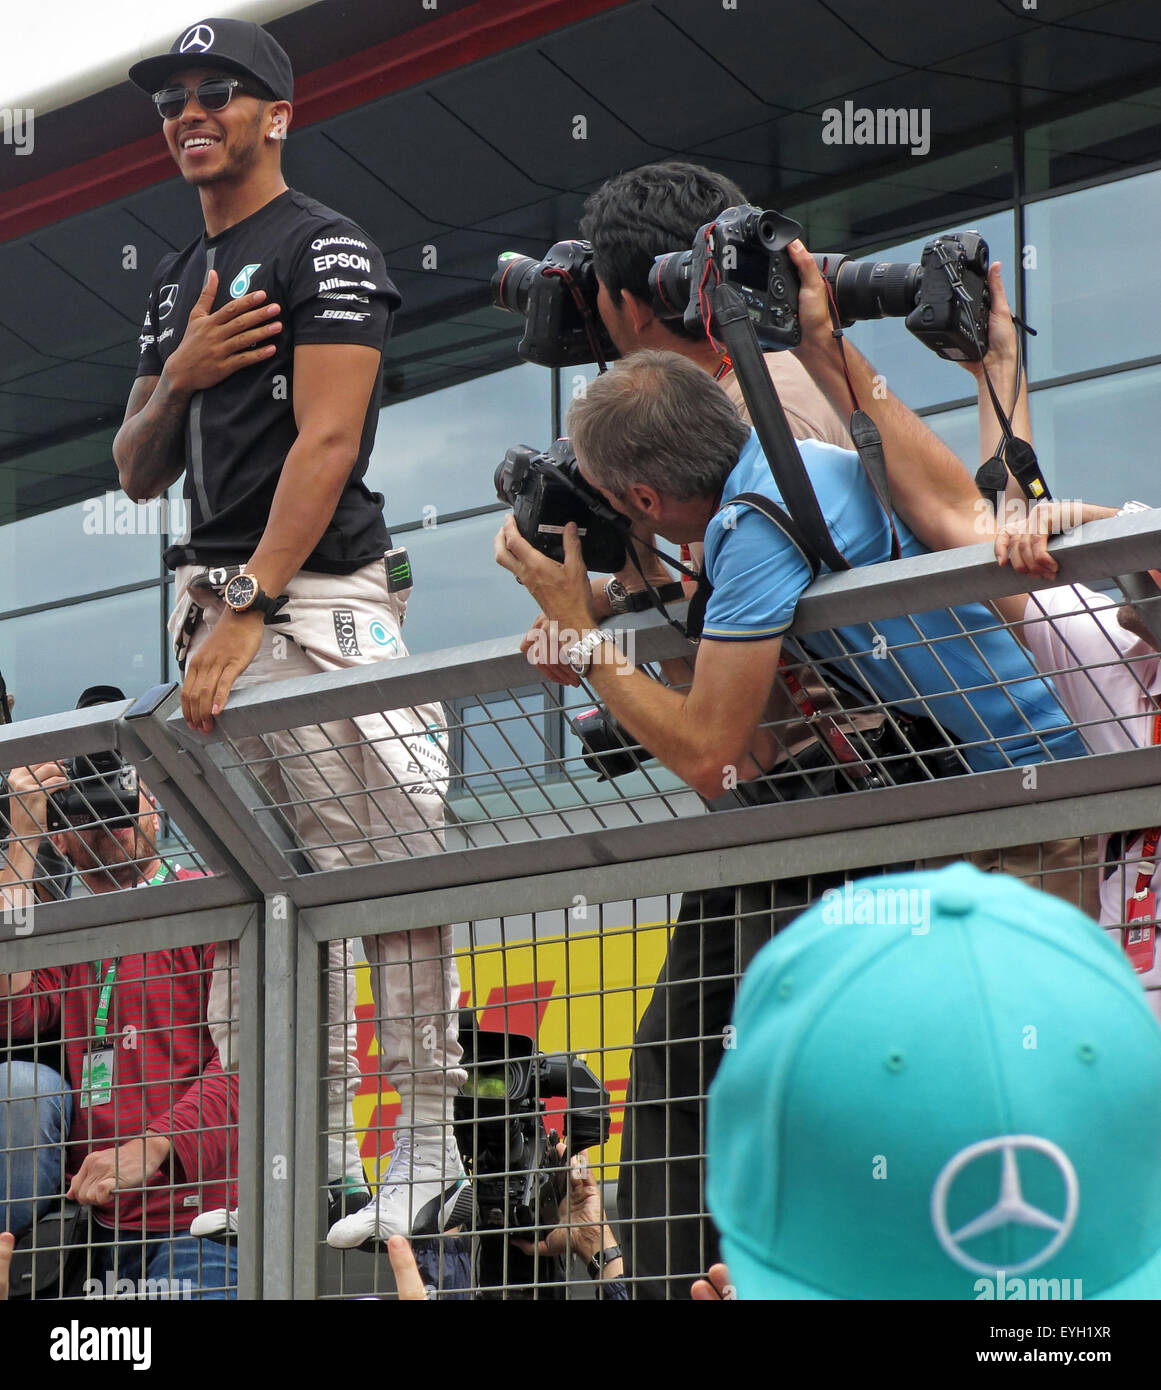 Lewis Hamilton souriant après la victoire, dans la zone de la fosse, Silverstone British F1 Grand Prix 2015 Banque D'Images